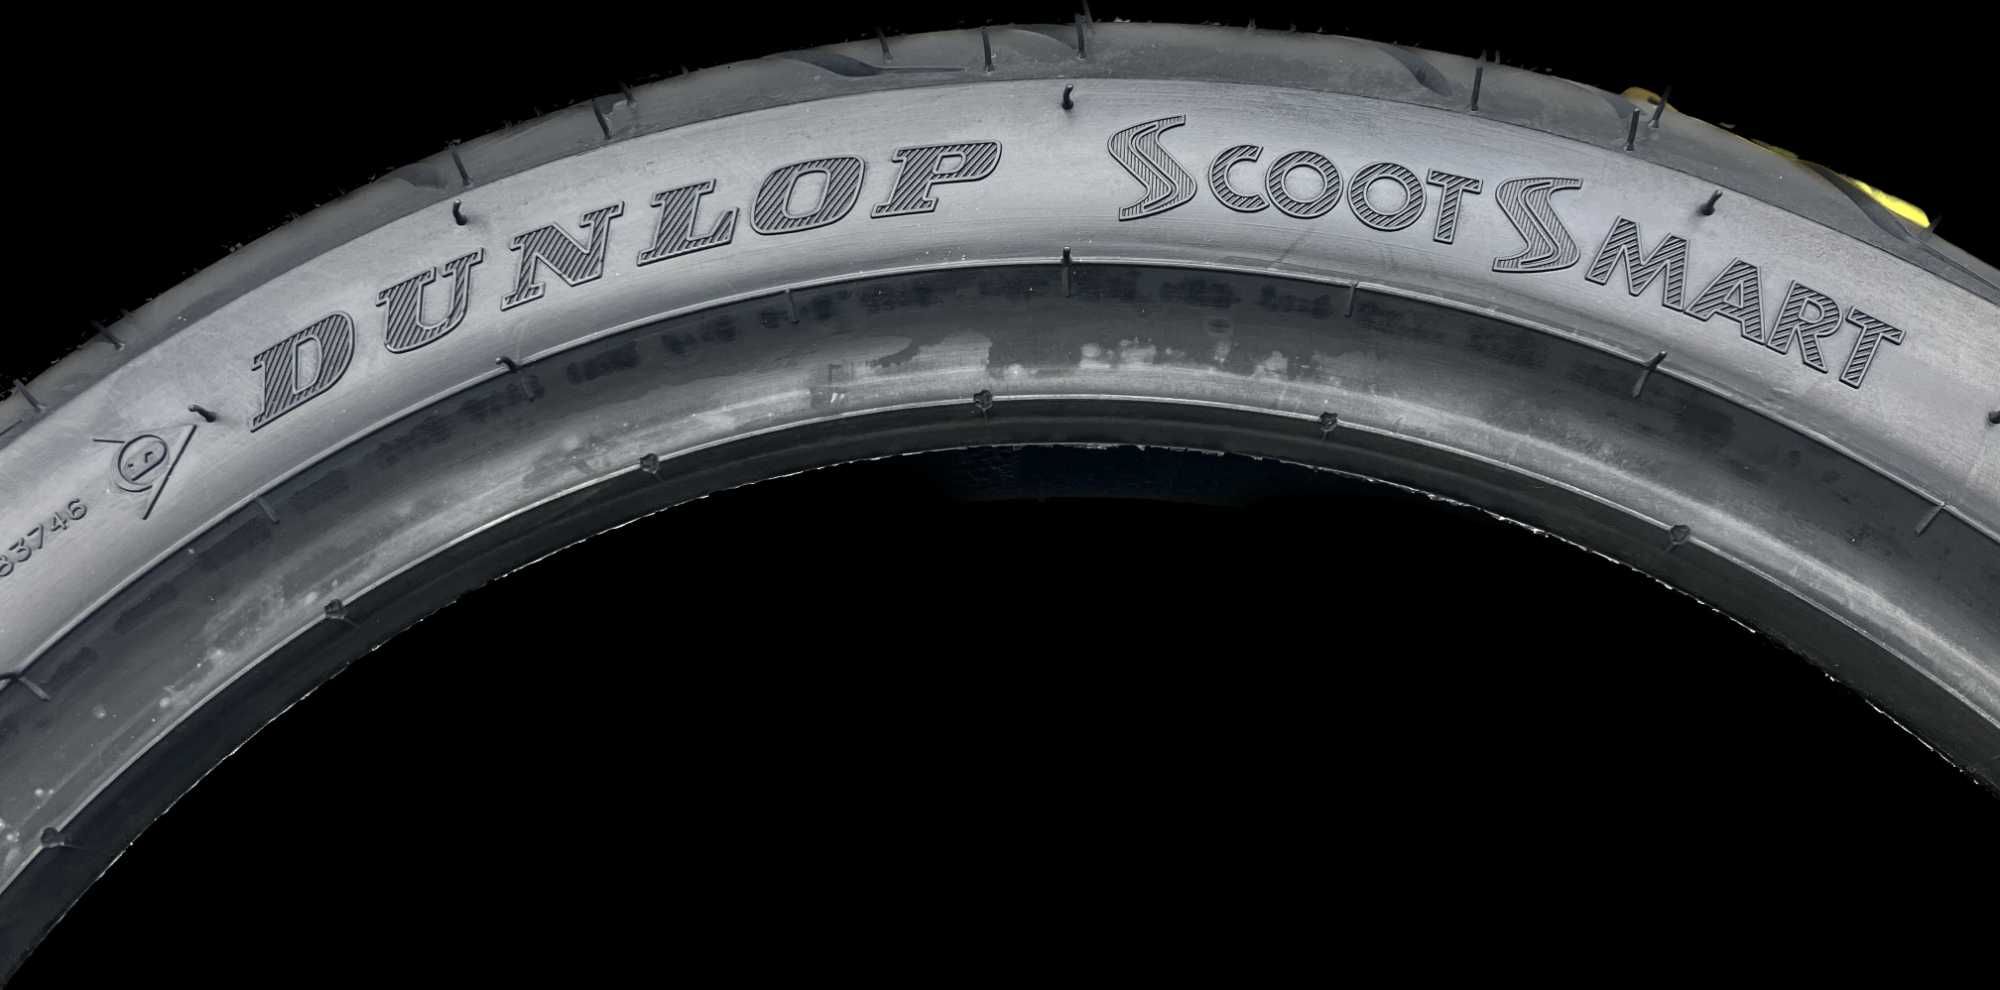 80/90-14 Dunlop SCOOTSMART 46P TL Nowa 2021